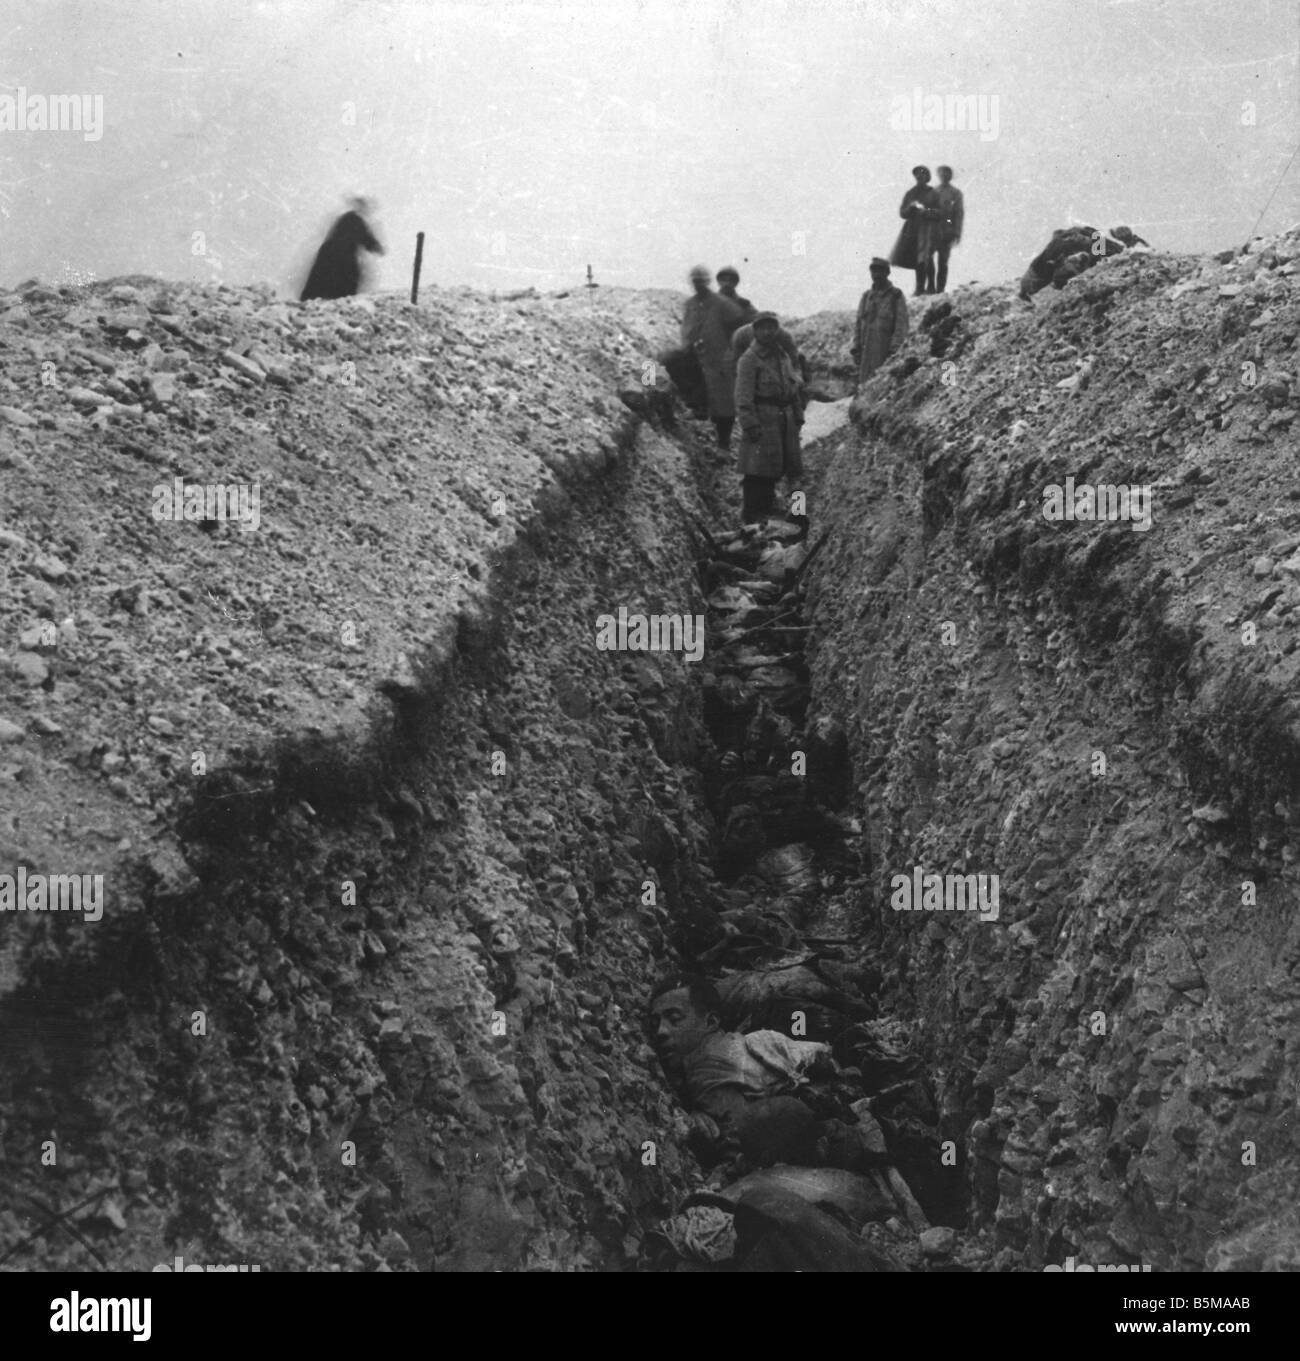 2 G55 W1 1915 20 e morti soldati tedeschi in trincea 1915 Storia Prima Guerra Mondiale fronte occidentale tedesco morto i soldati in una trincea dopo Foto Stock